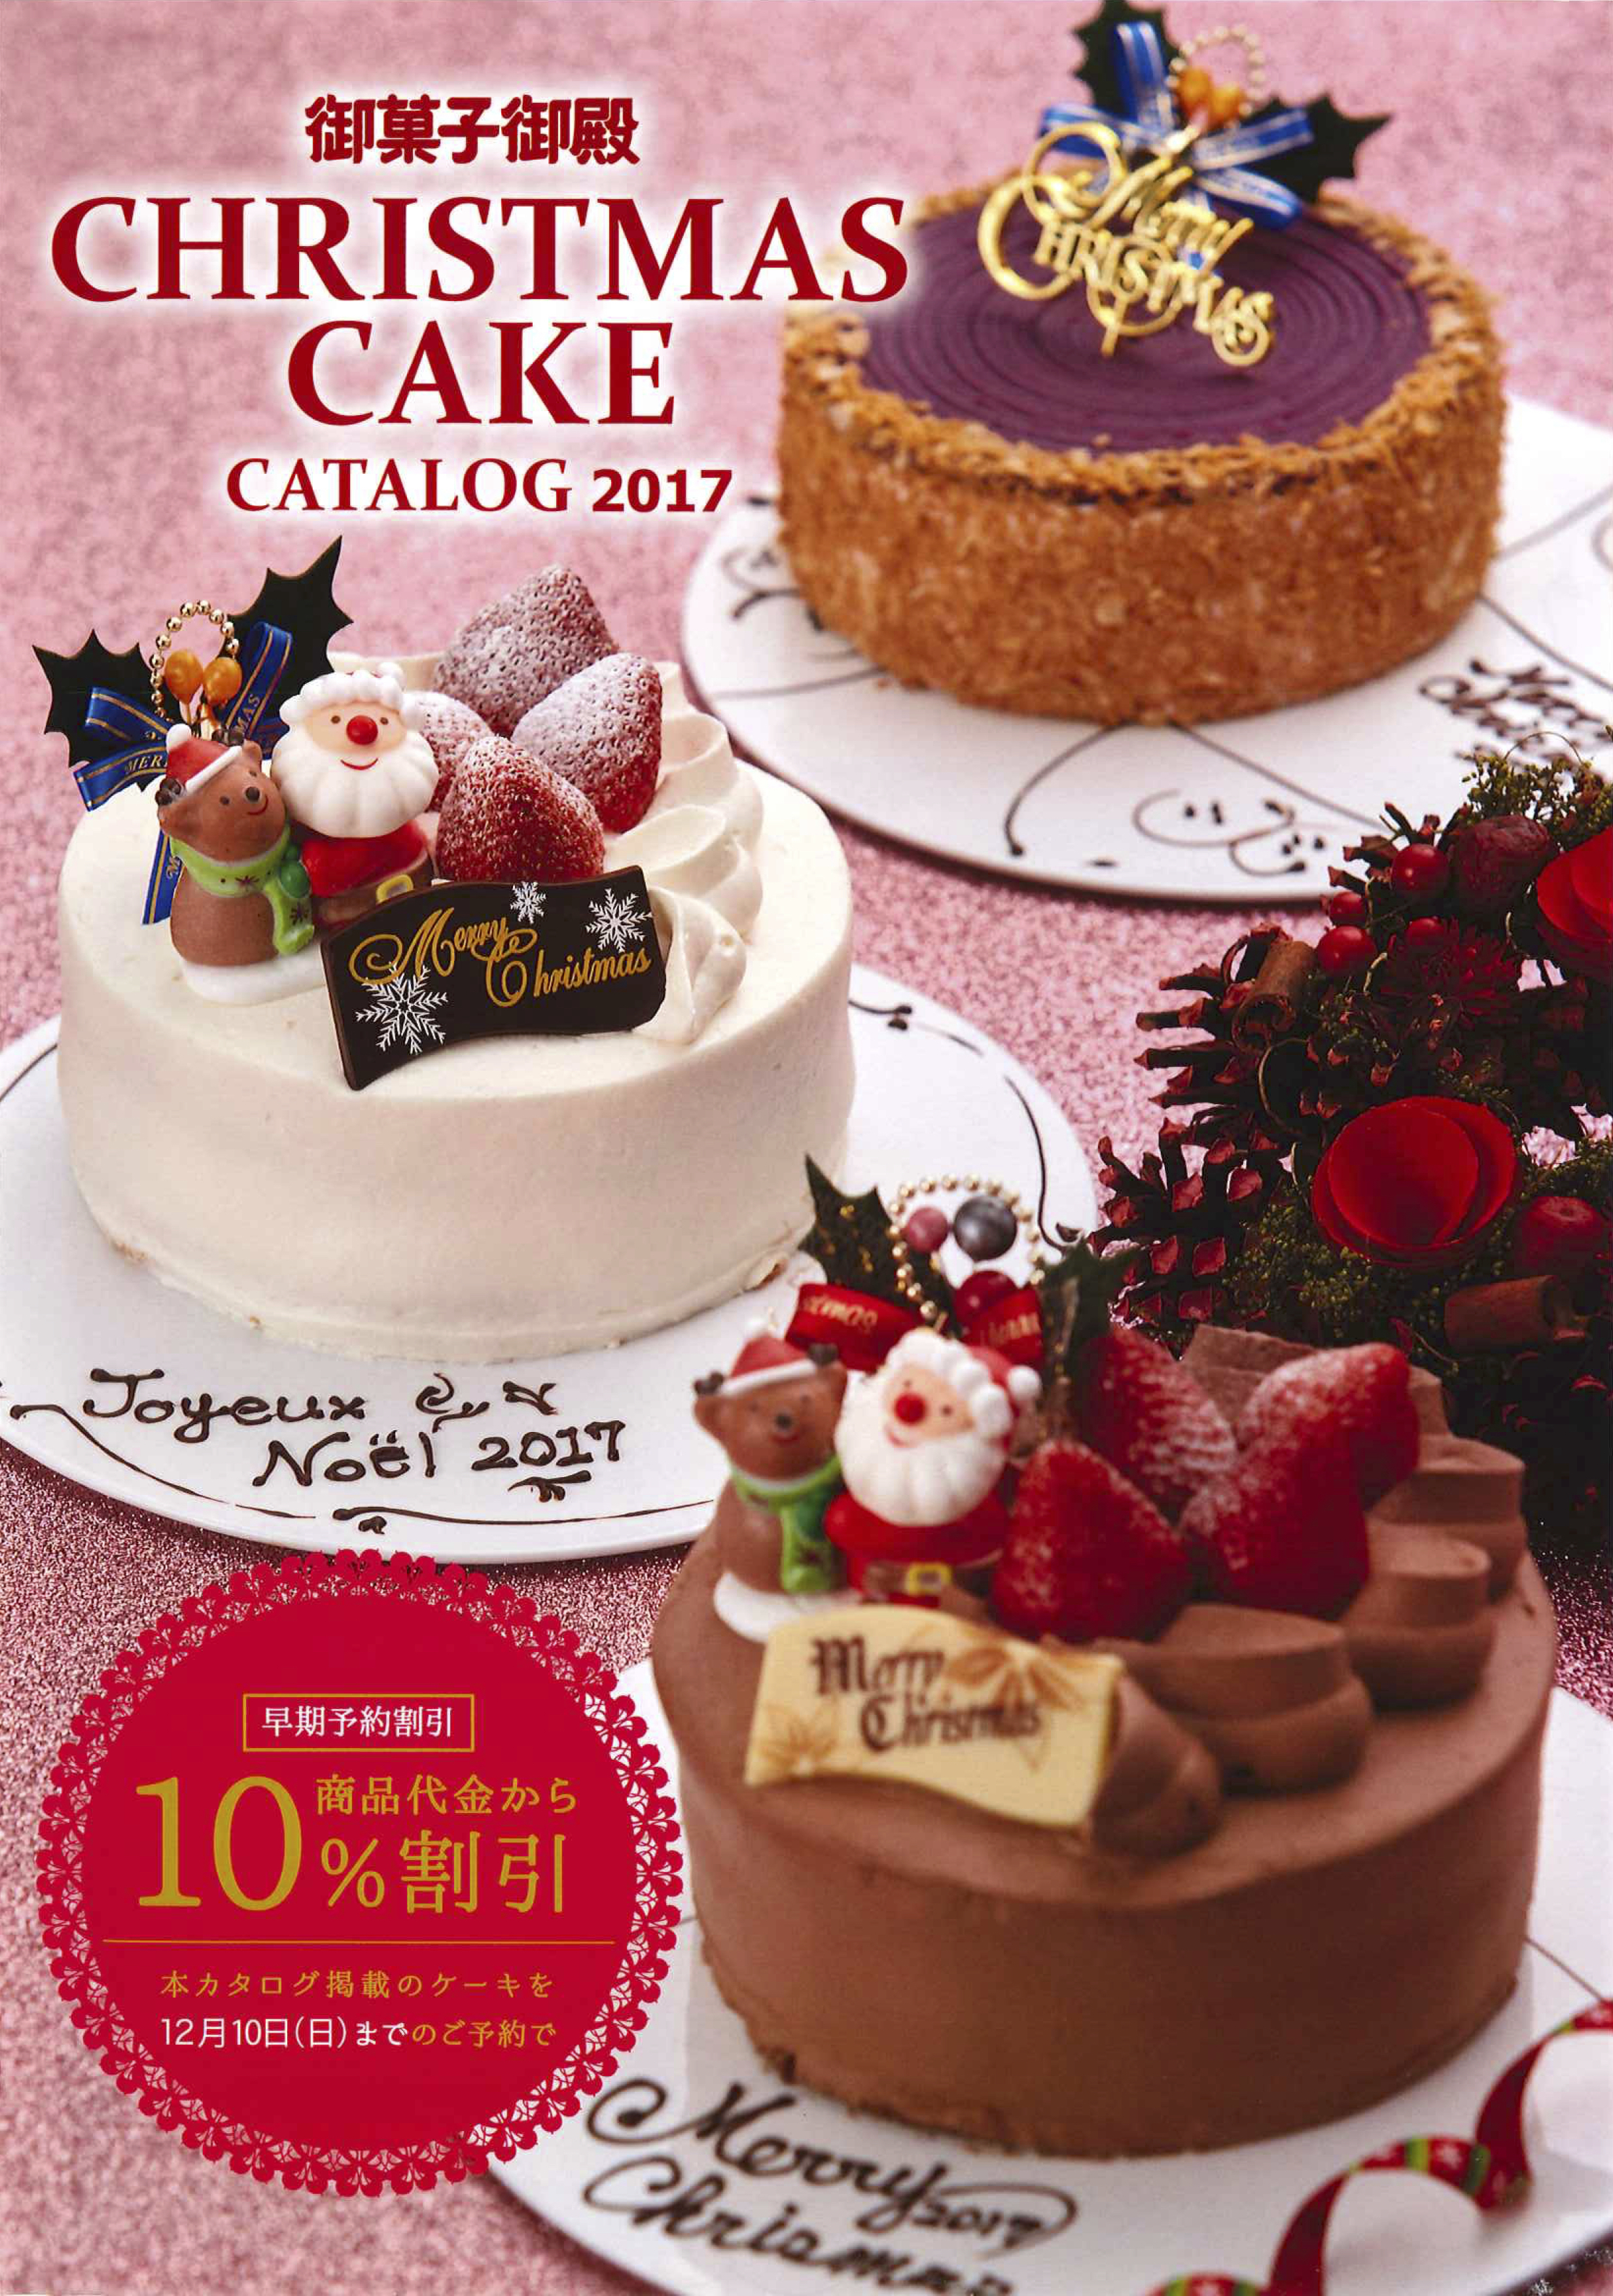 御菓子御殿 クリスマスケーキカタログ17p1 沖縄のお土産 元祖 紅いもタルト 御菓子御殿 公式